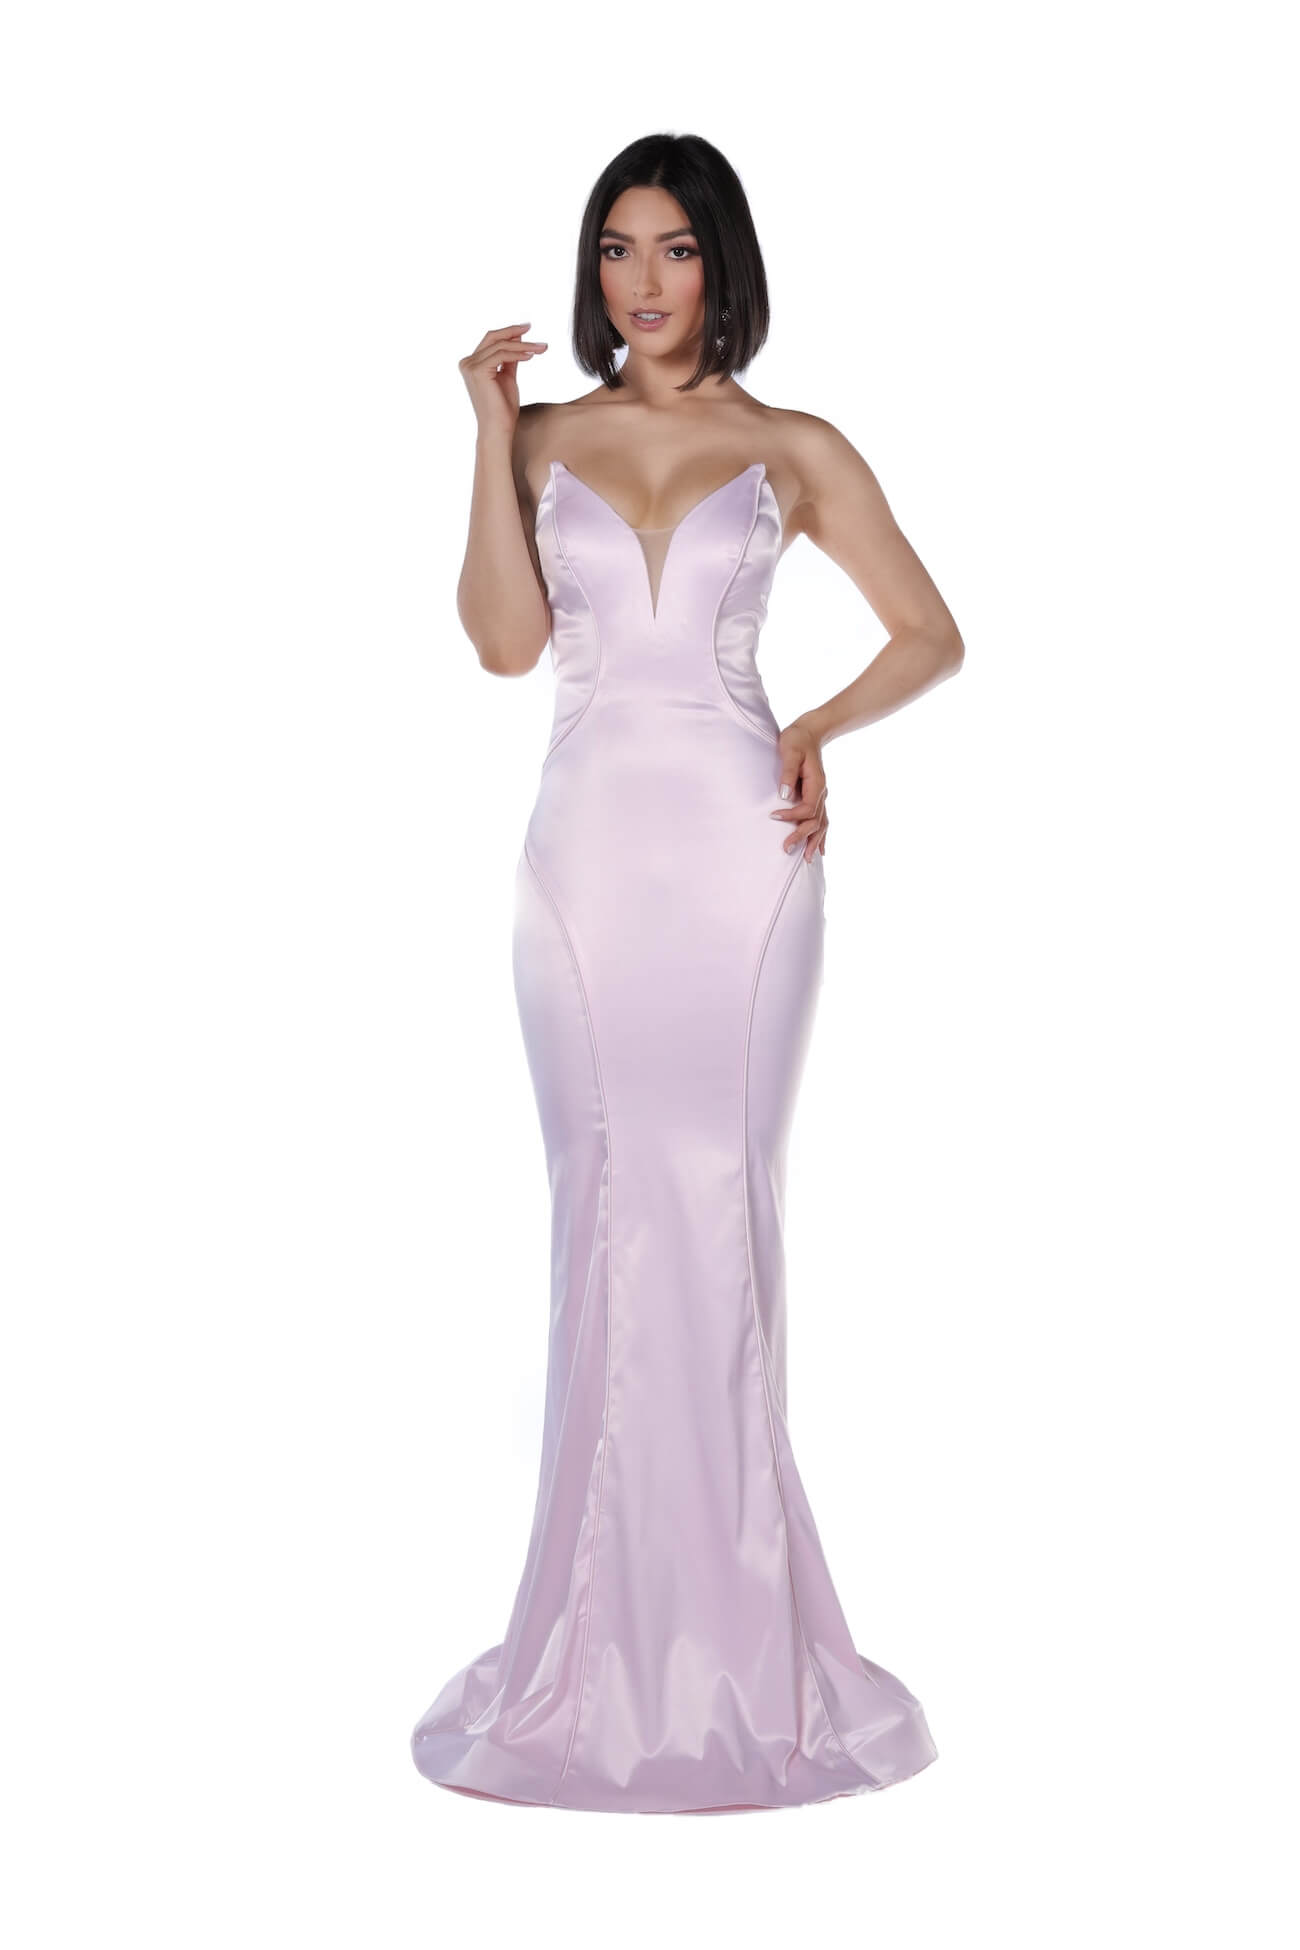 Vienna Pink Size 4 Strapless Plunge Mermaid Dress on Queenly